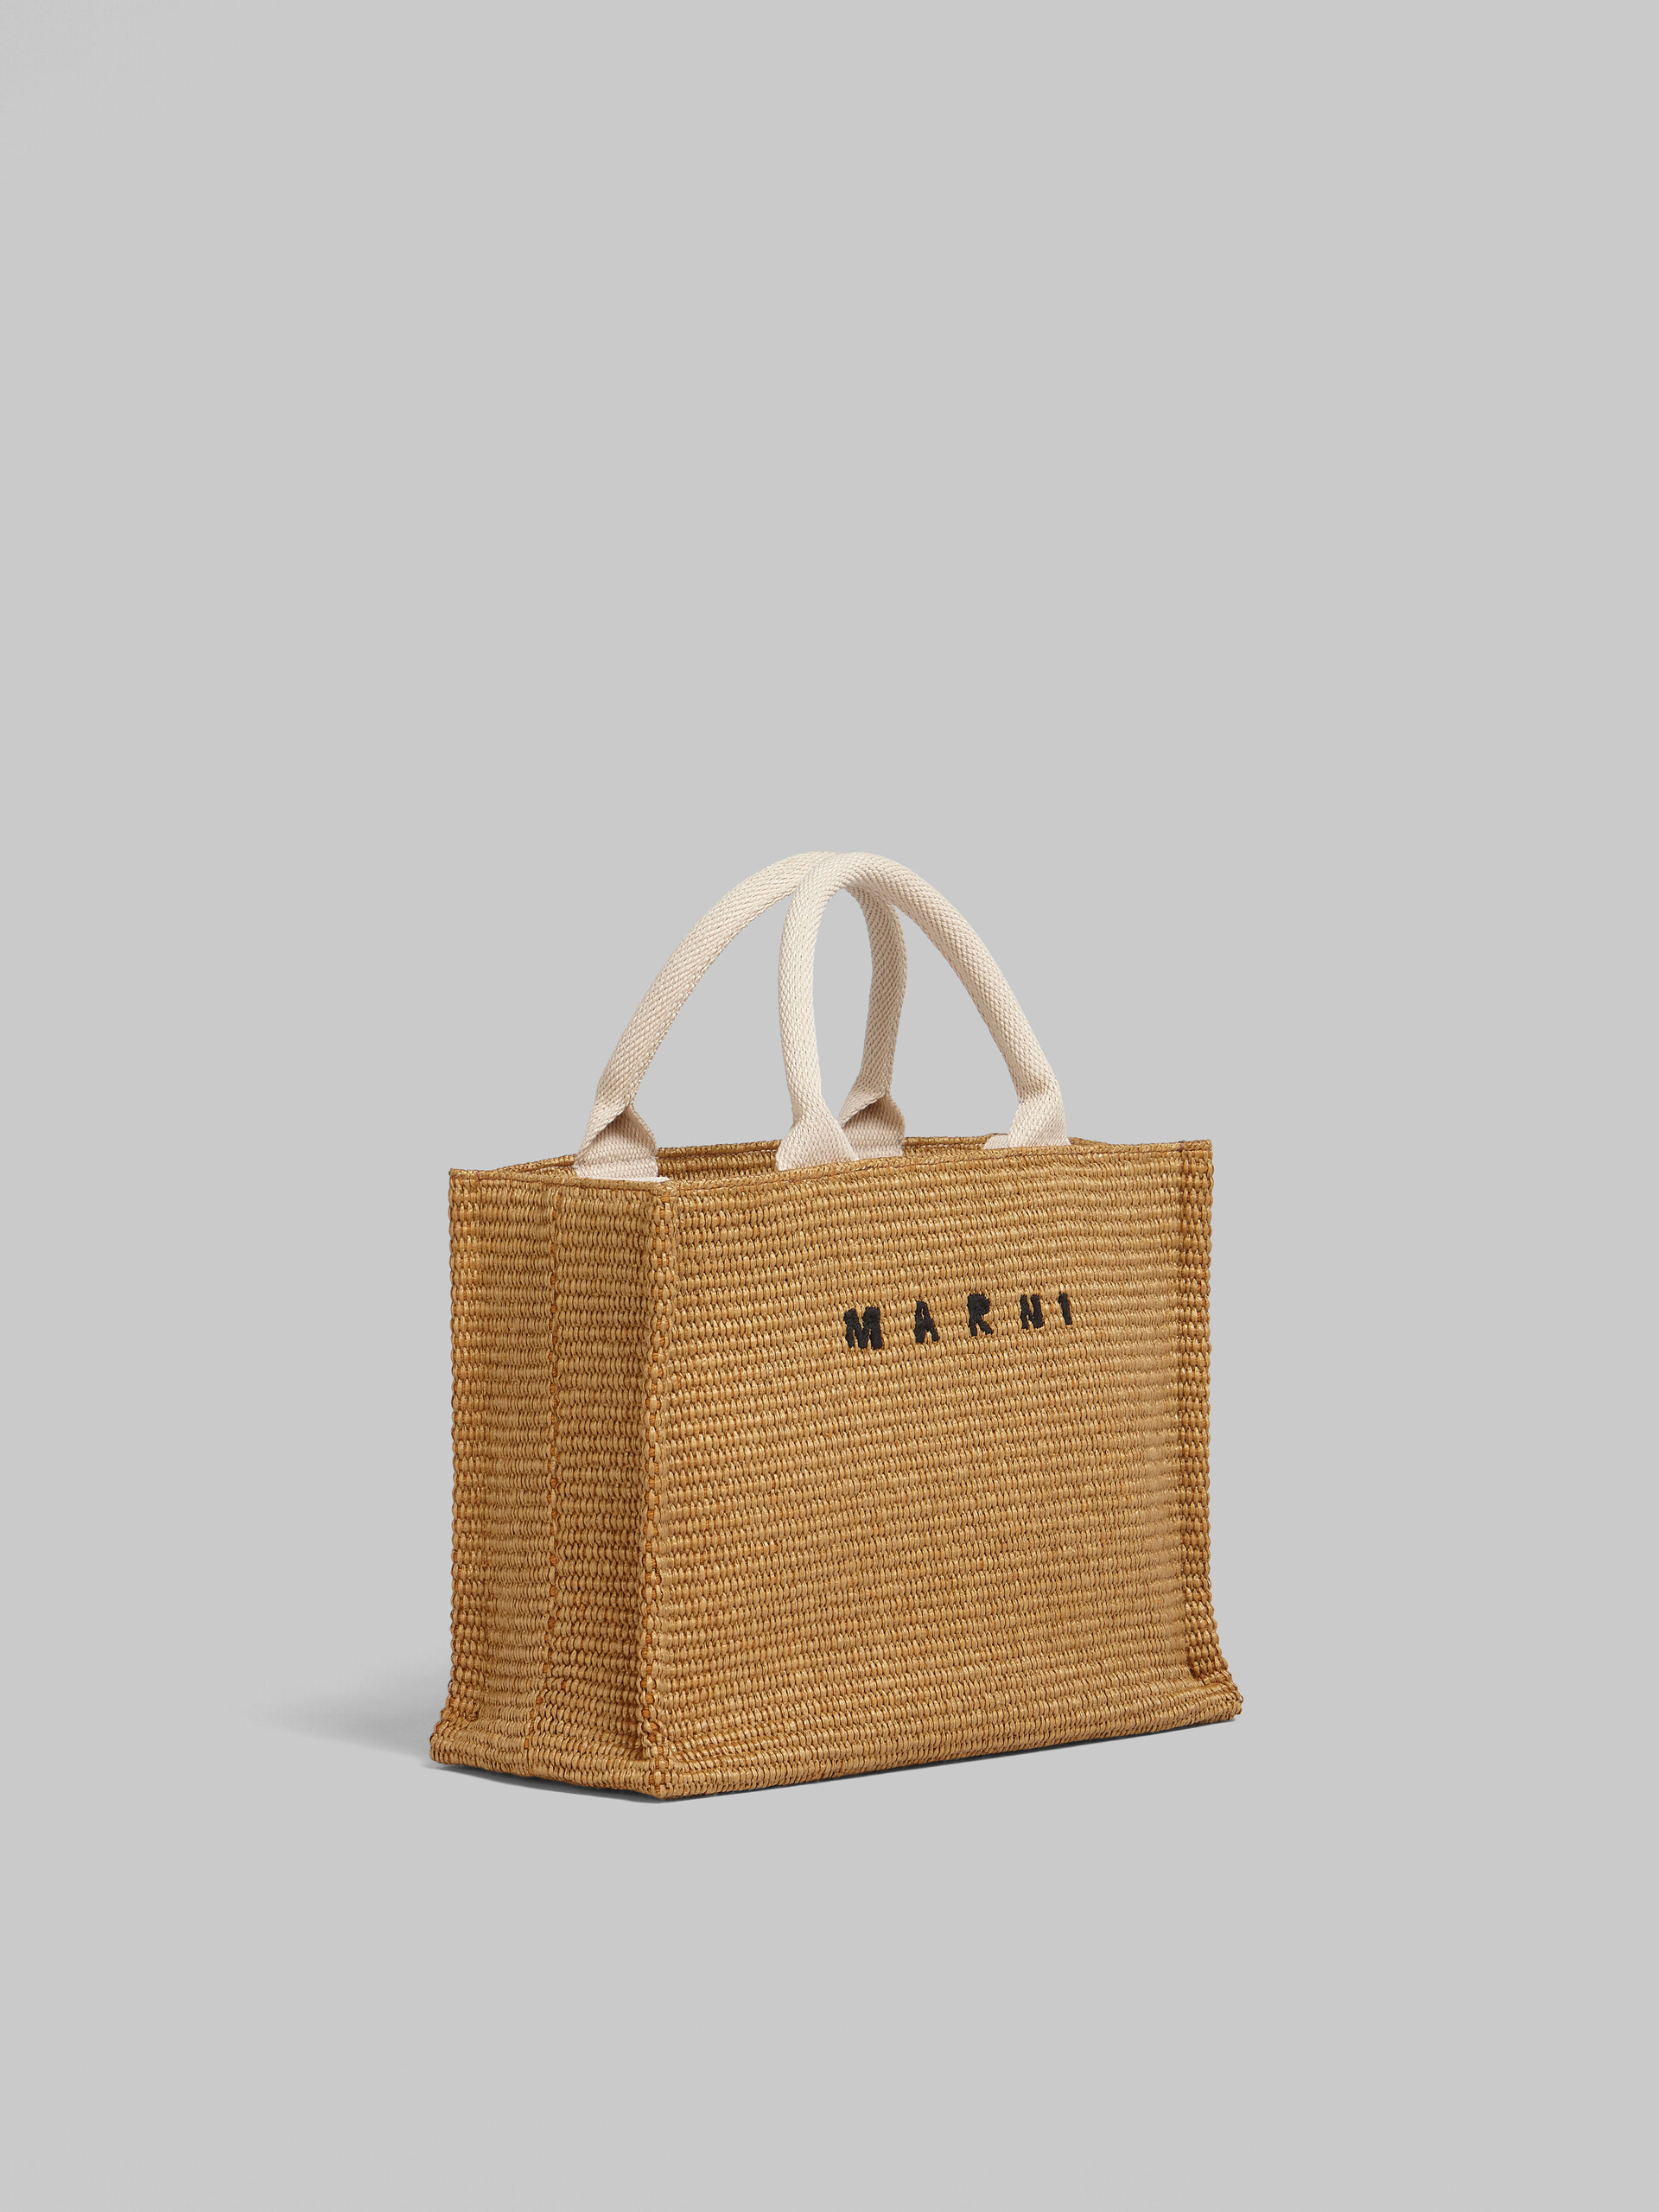 Tote Bag Piccola in tessuto effetto rafia lilla - Borse shopping - Image 6